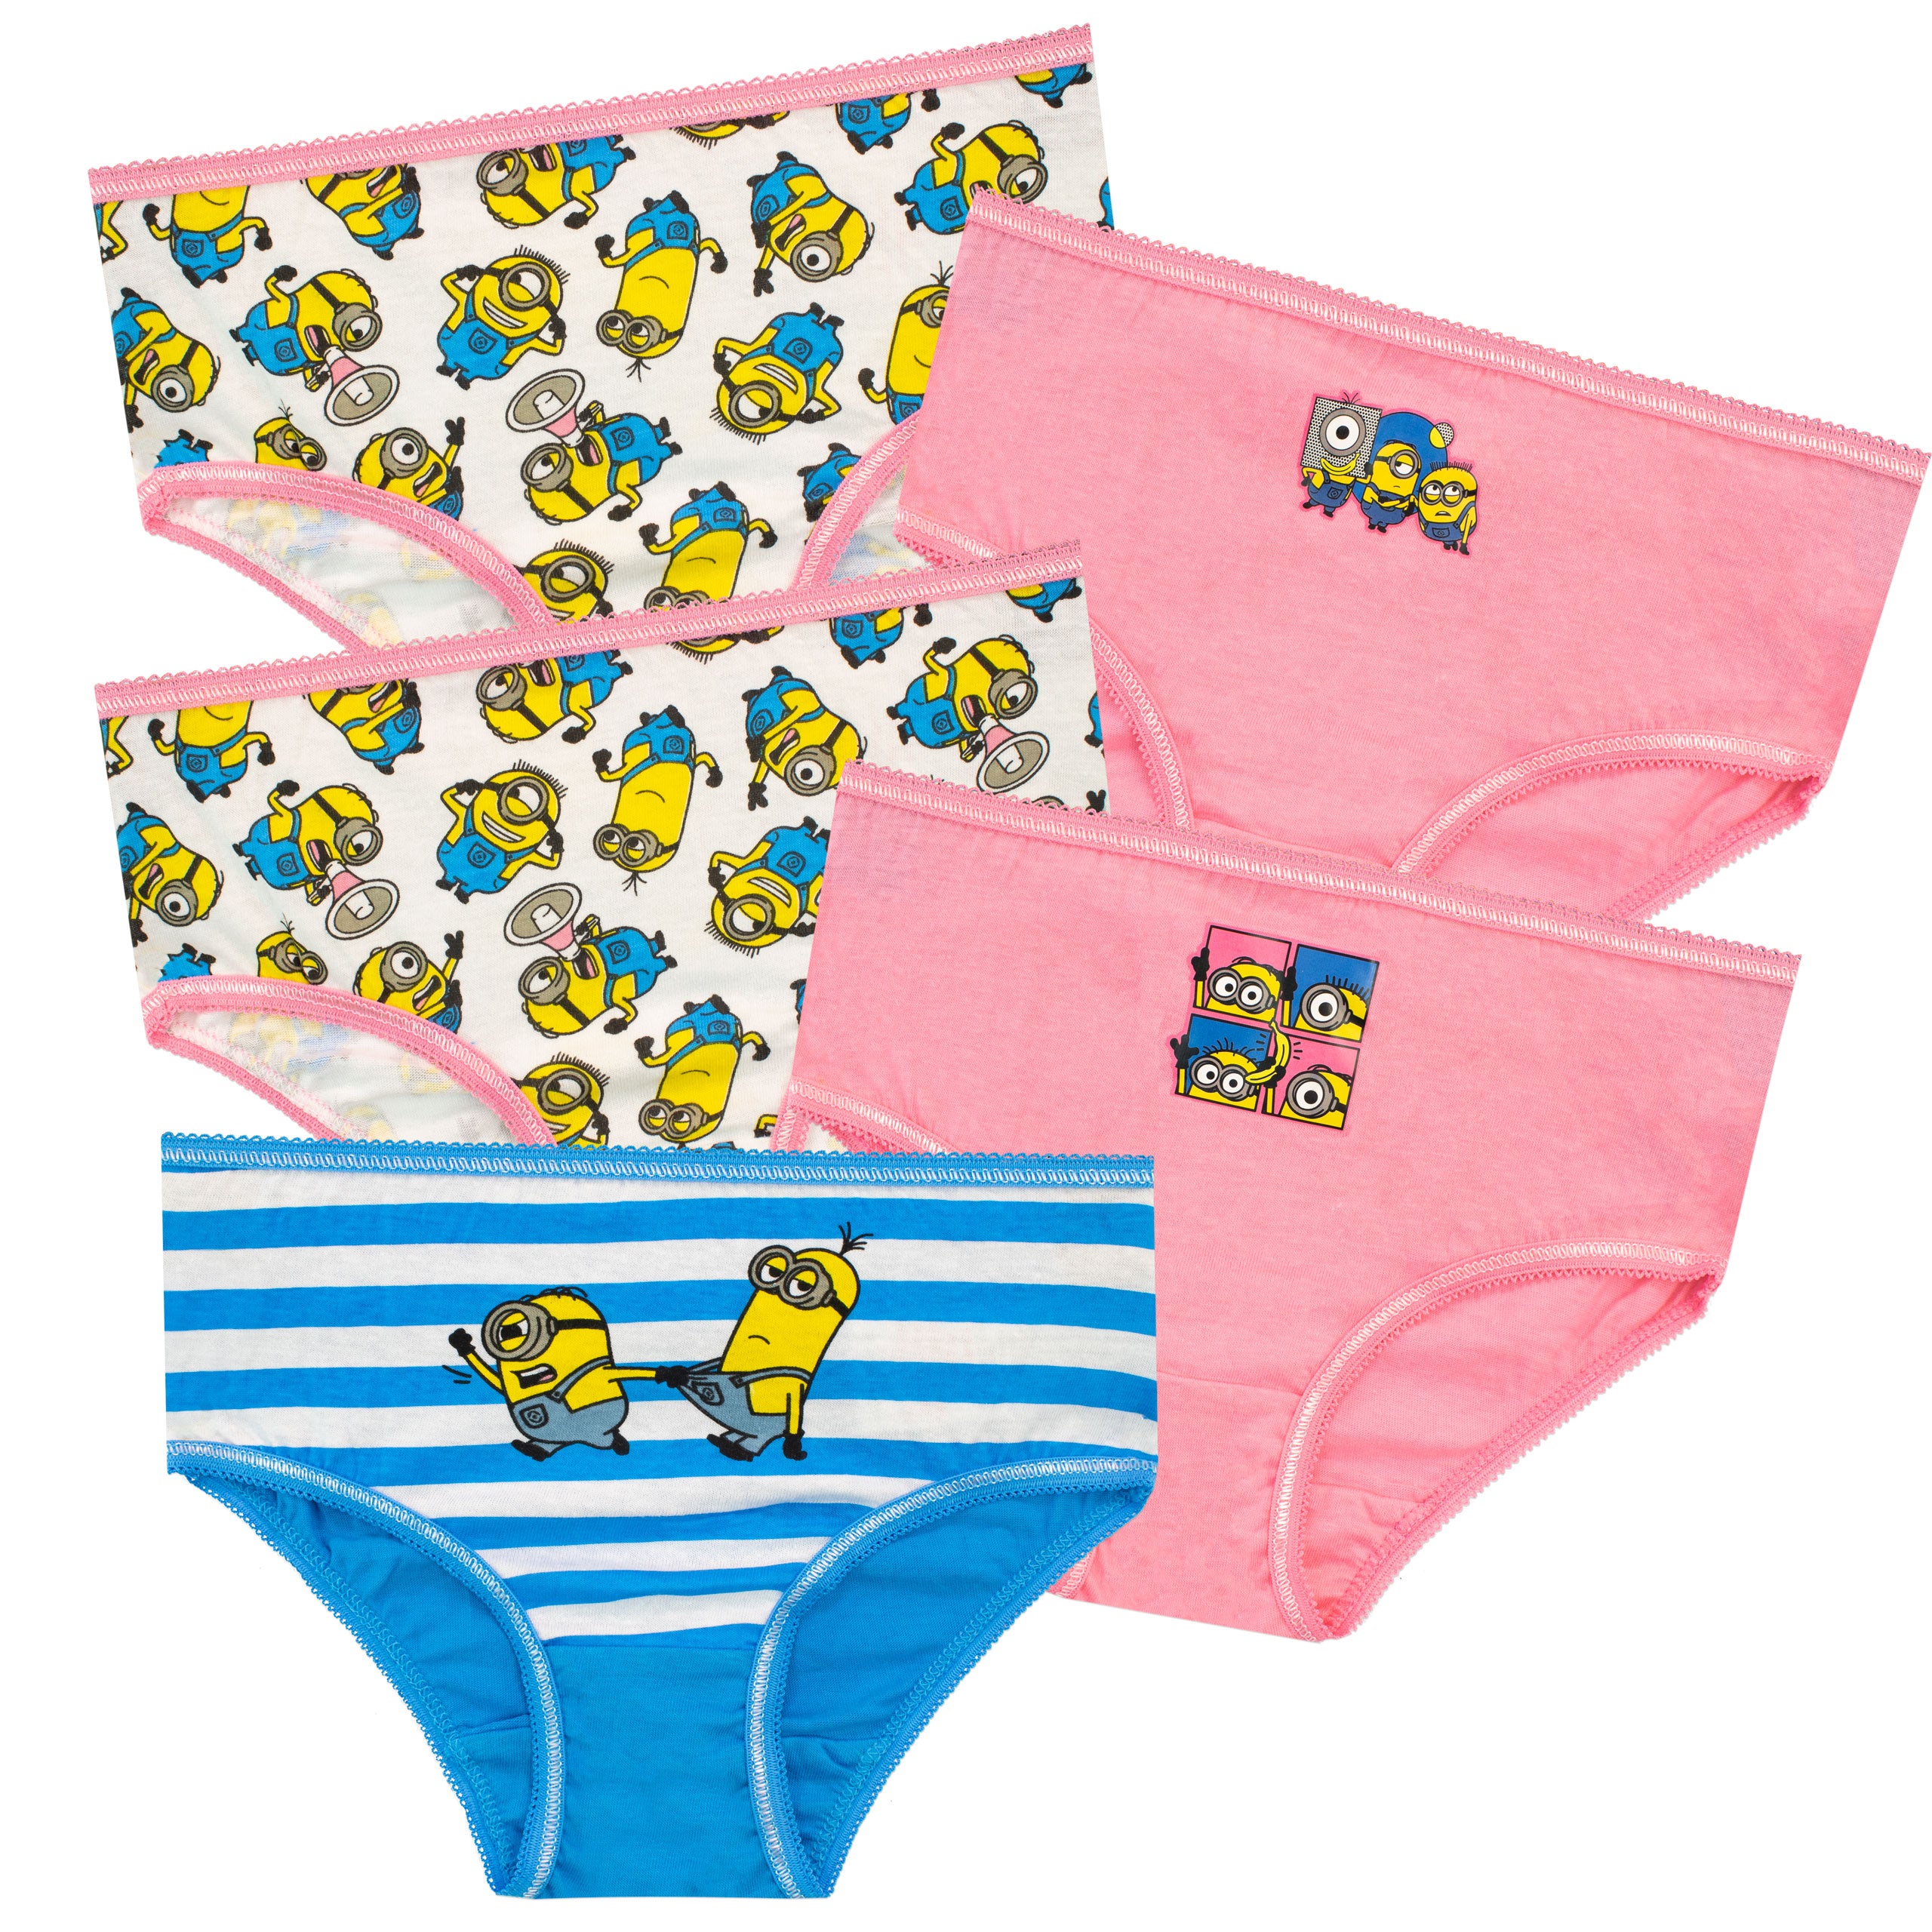 Dreamworks Trolls Toddler Girls Underwear Briefs Panties 9 Pairs Size 4T  NWT 